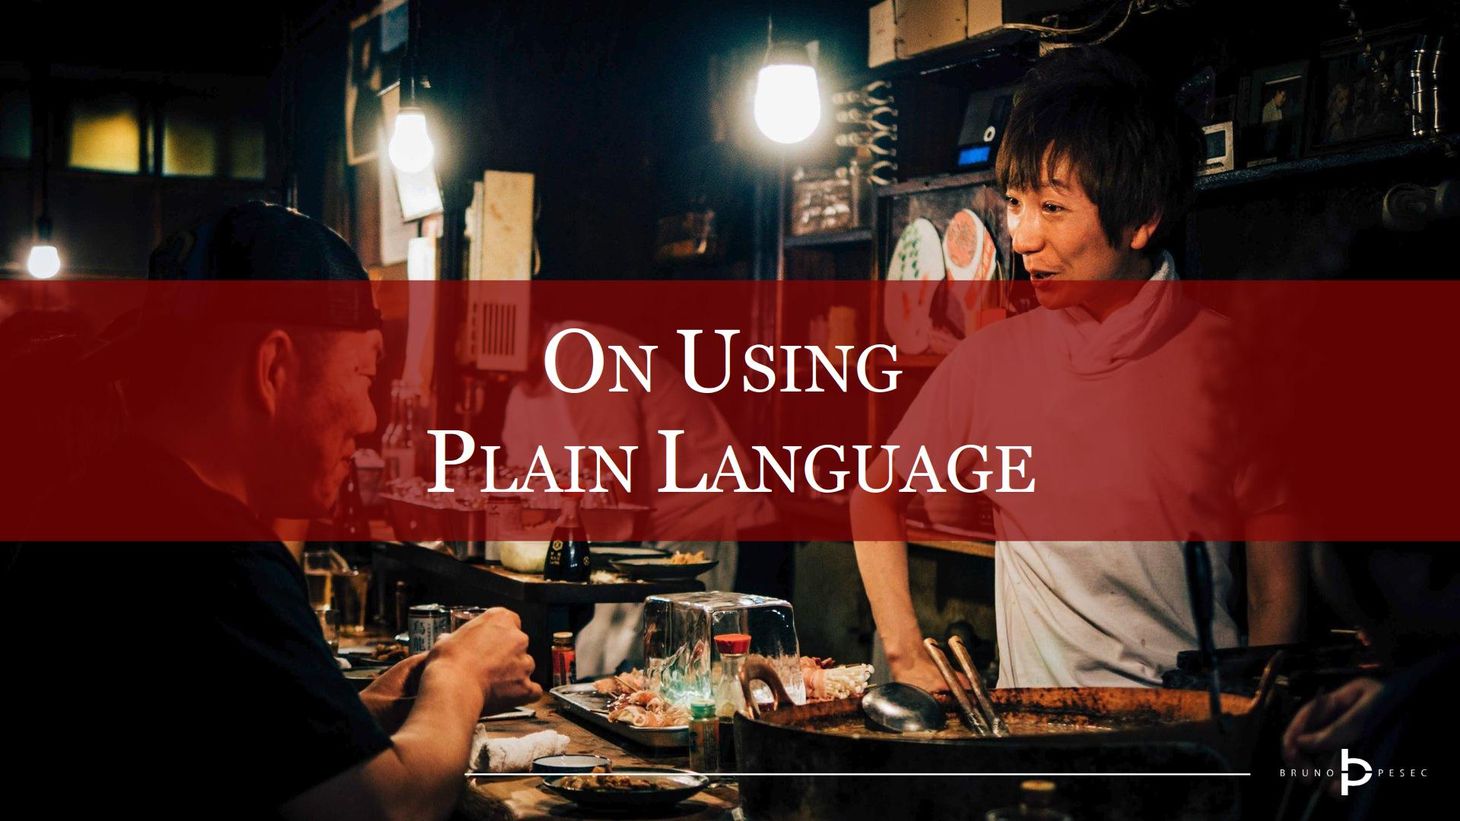 On using plain language